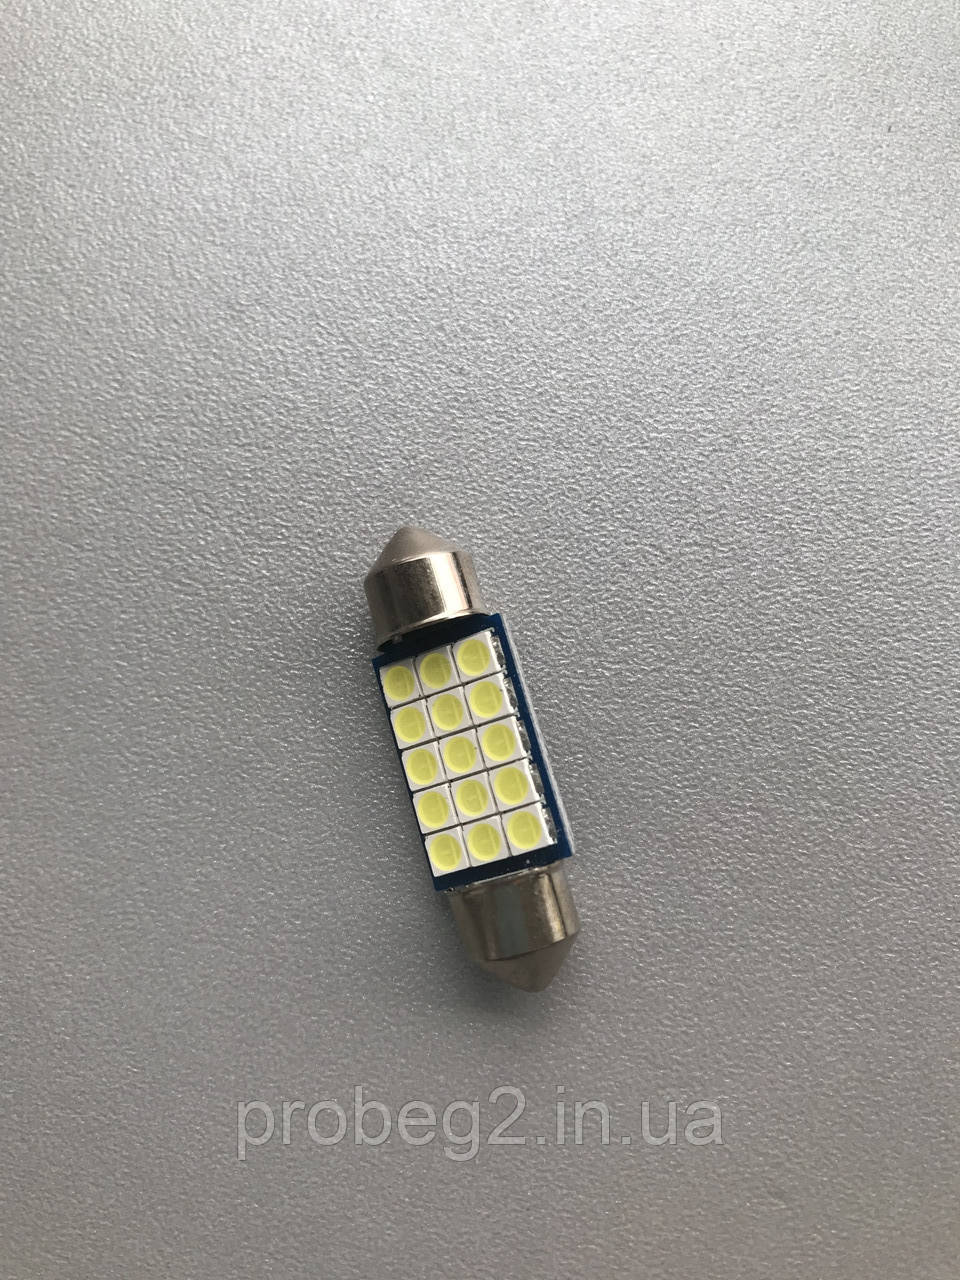 Світлодіодна лампа AC з діодами Samsung 15 smd 36 mm